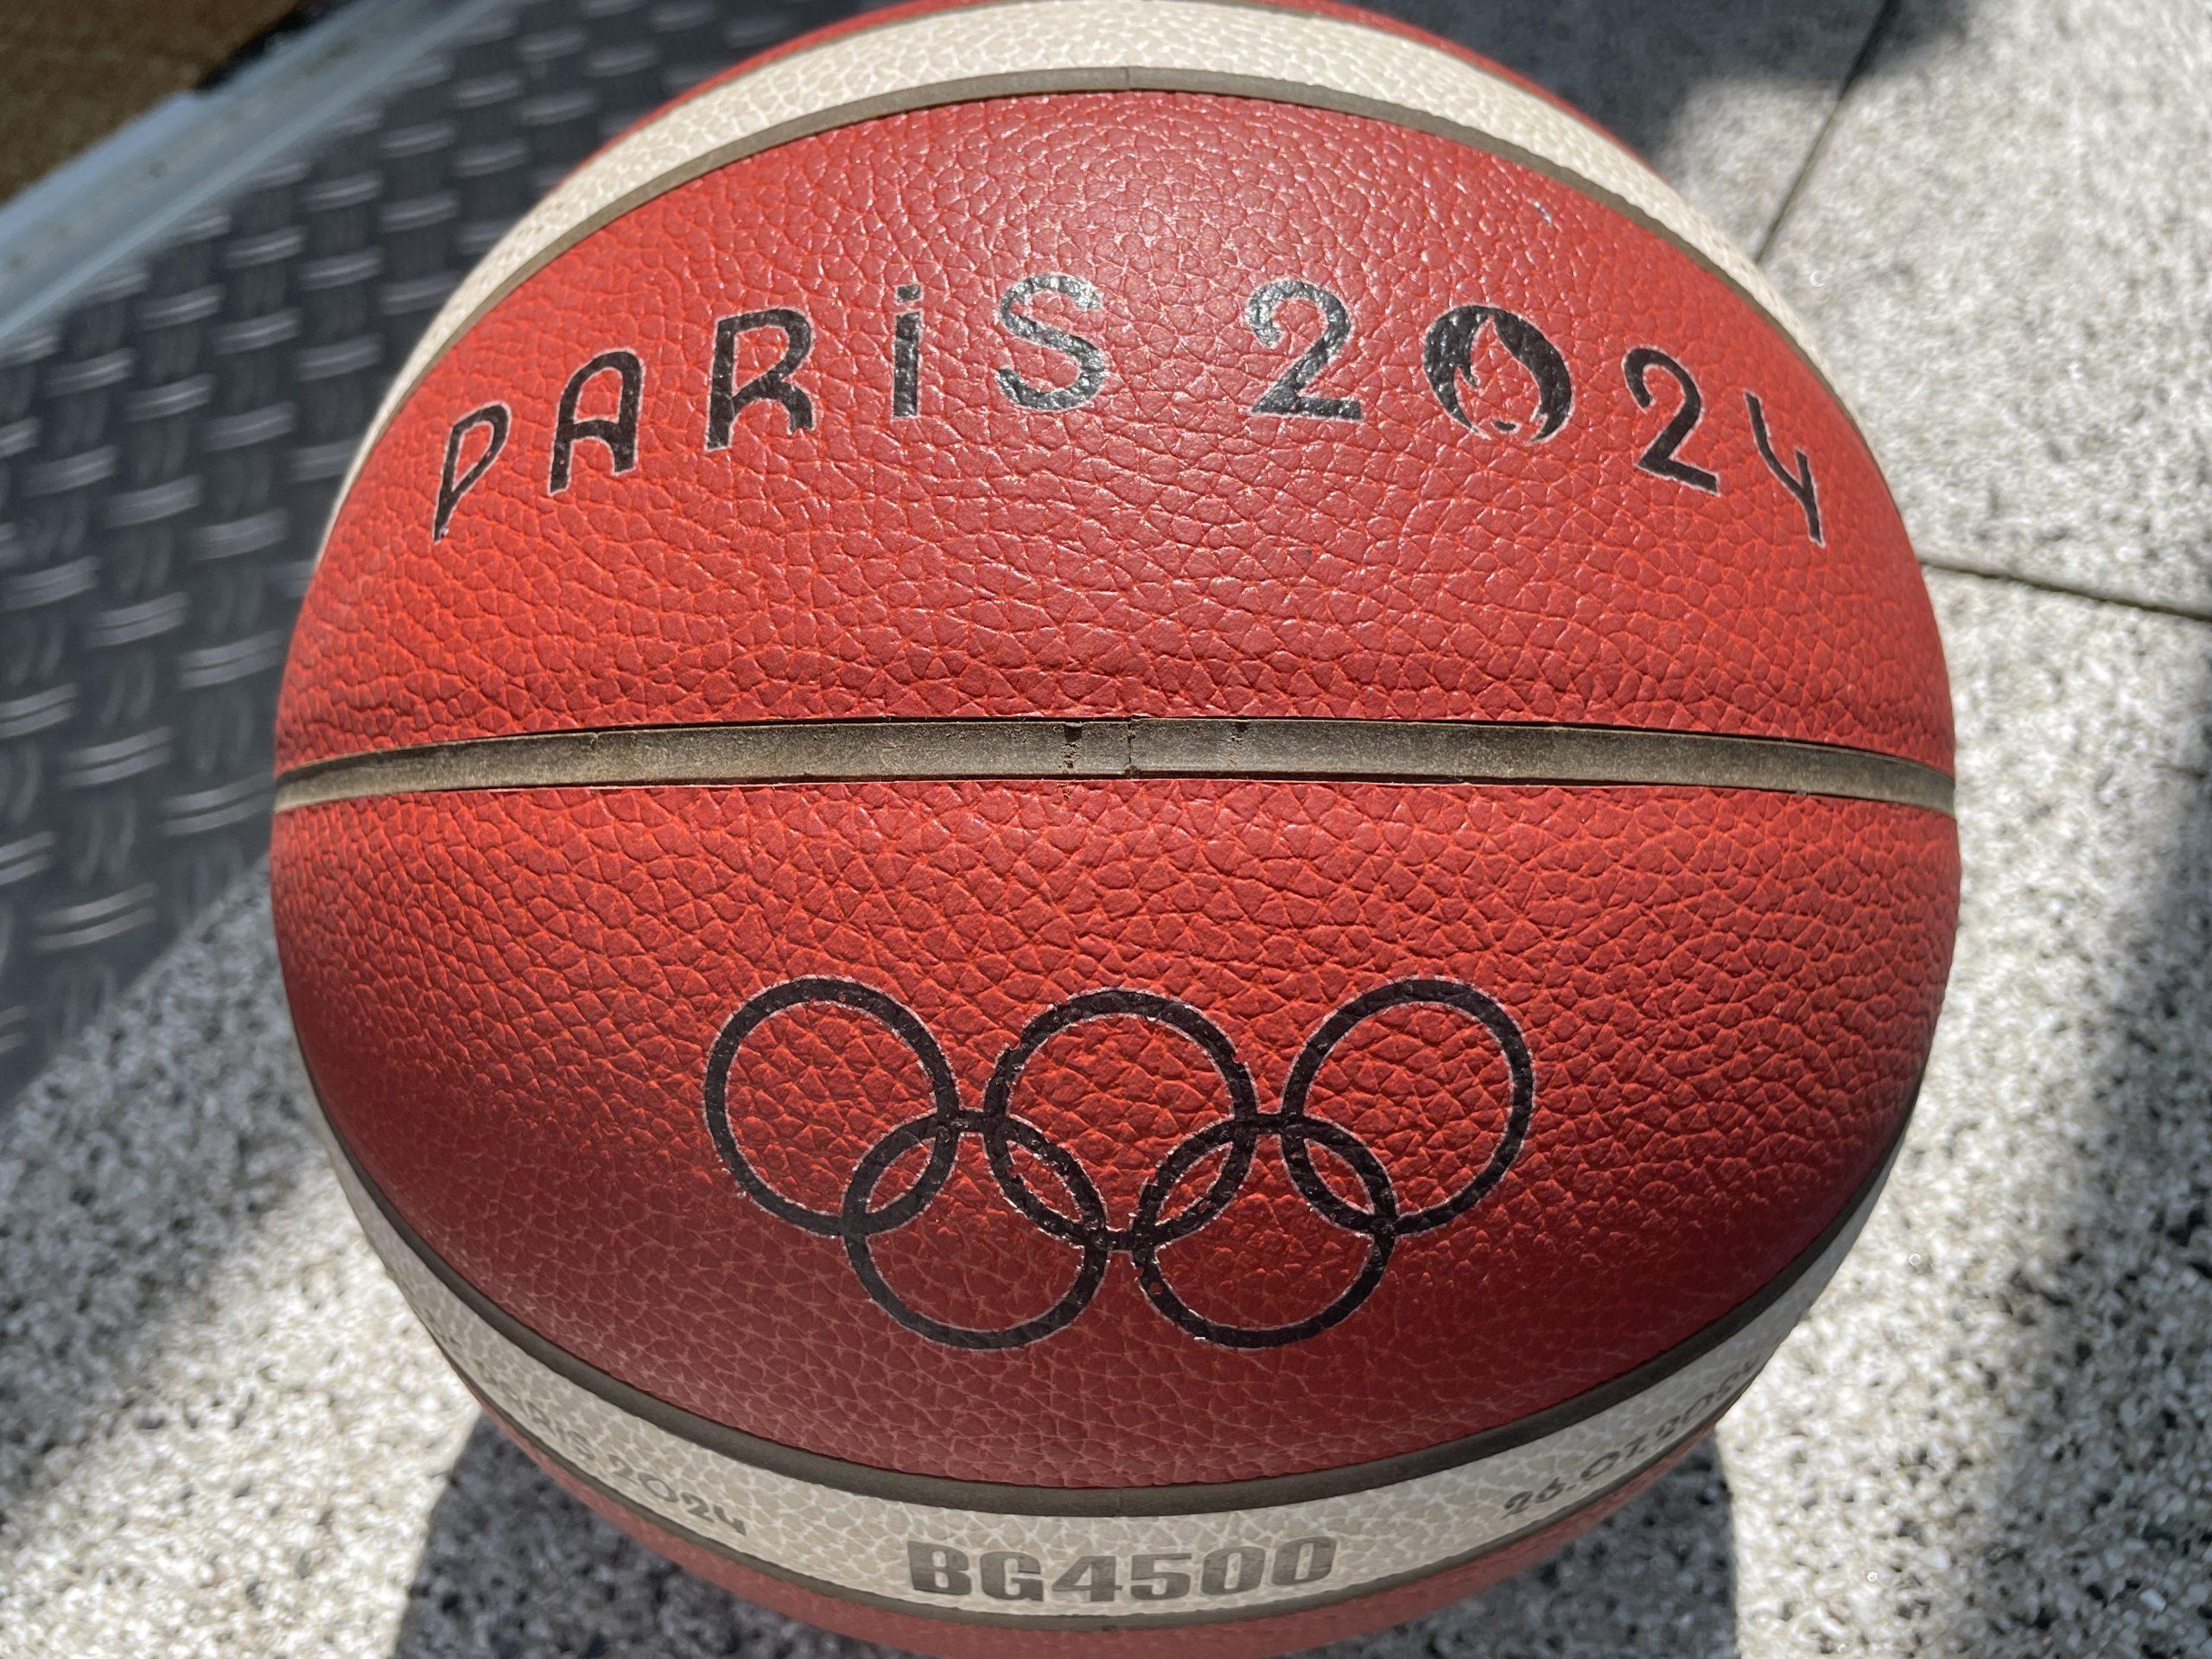 Comment regarder le basket à la télé aux JO de Paris?